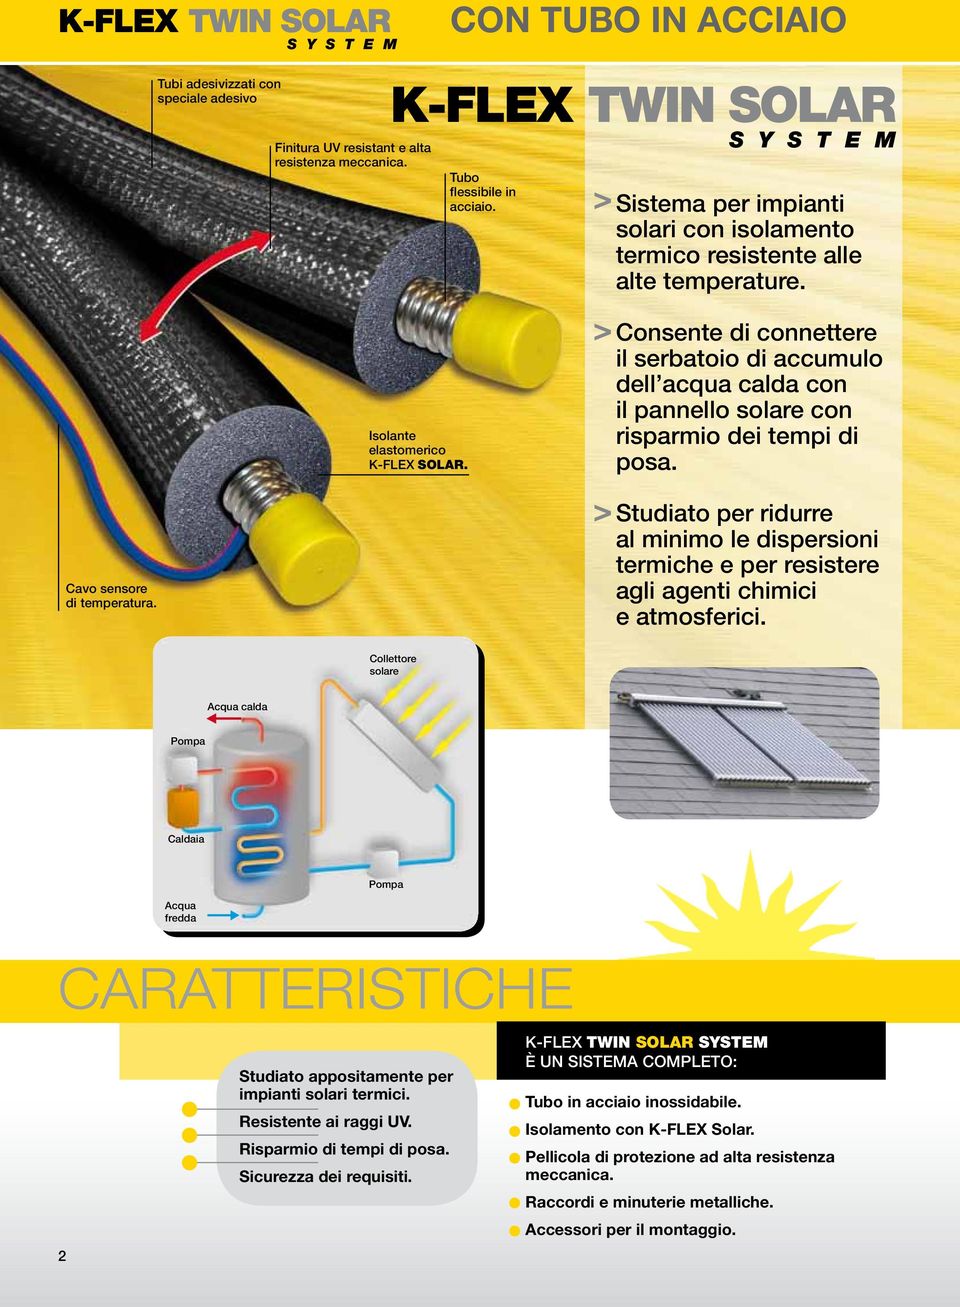 Consente di connettere il serbatoio di accumulo dell acqua calda con il pannello solare con risparmio dei tempi di posa.